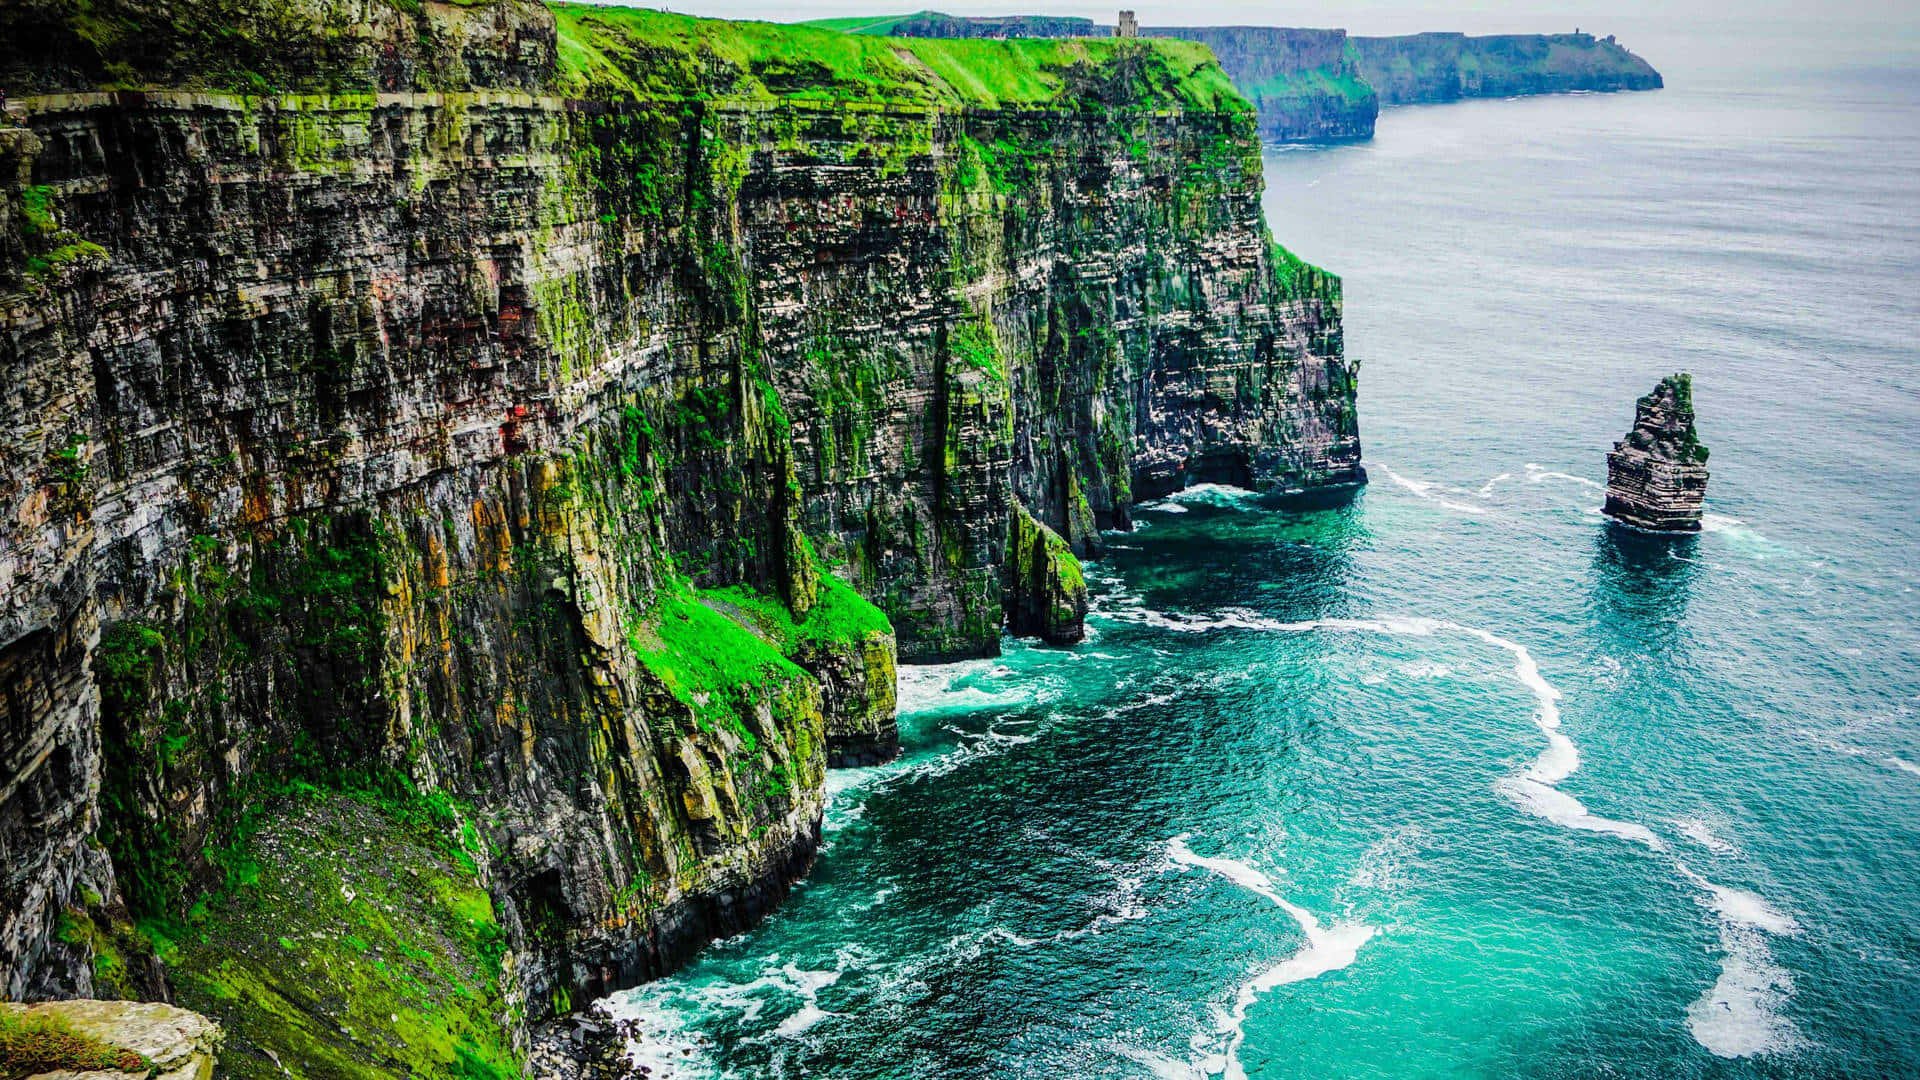 Là một tác phẩm nghệ thuật, bức ảnh nền về Ireland sẽ tạo ra sự tuyệt vời cho trải nghiệm desktop của bạn. Hãy ngắm nhìn những thung lũng xanh thẳm thuỷ điện, những đồi núi đầy sức sống và những bãi biển tuyệt đẹp trong bức ảnh nền Ireland. Bạn sẽ cảm thấy trang trọng và tuyệt vời hơn bao giờ hết với bức ảnh nền về đất nước xinh đẹp này.